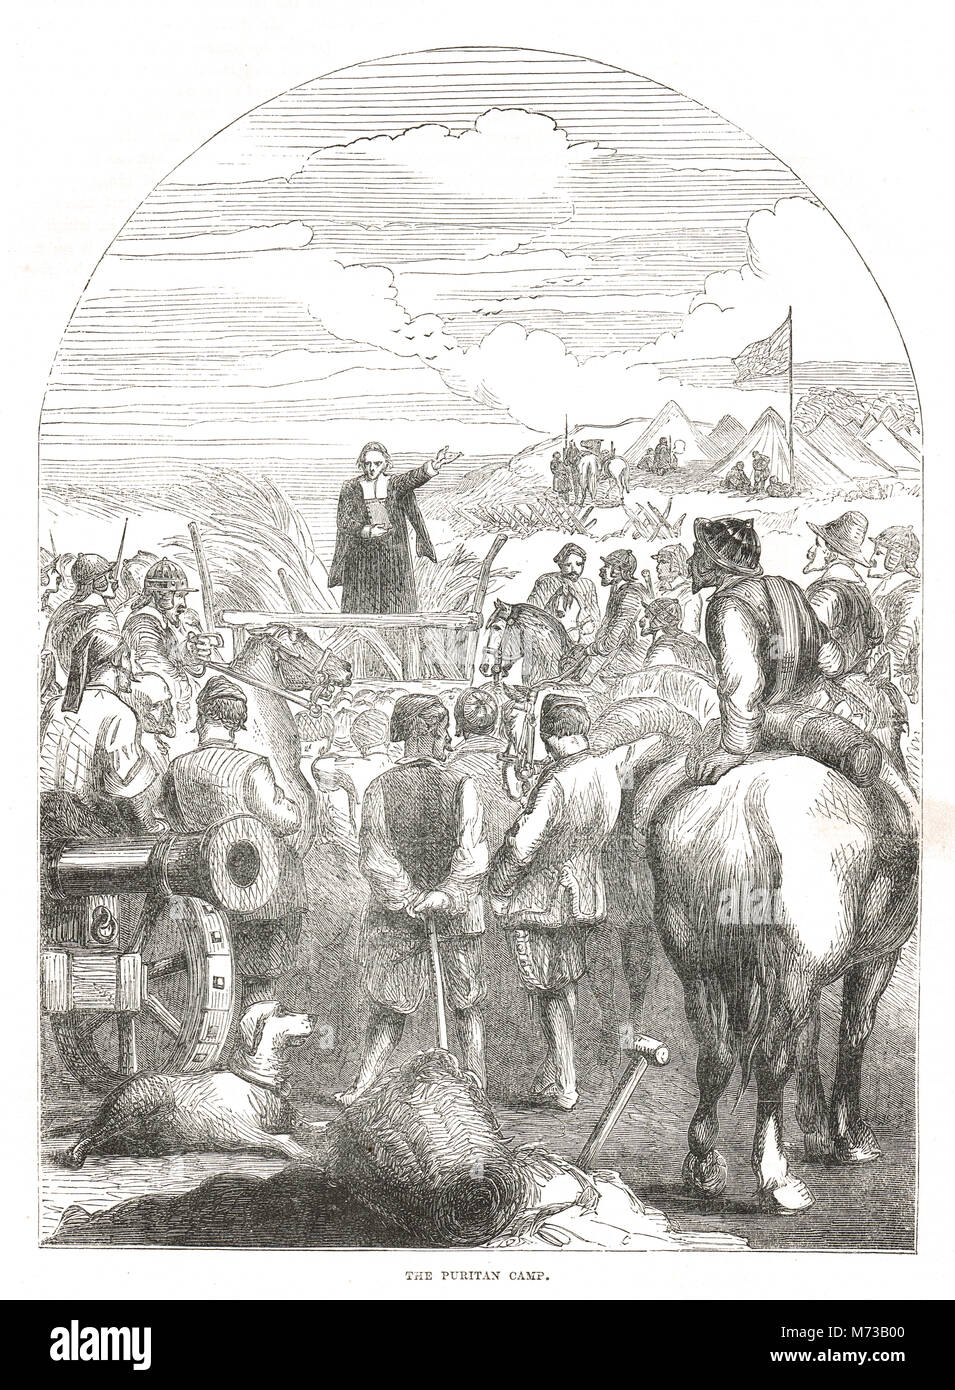 Un camp puritaine, guerre civile anglaise Banque D'Images